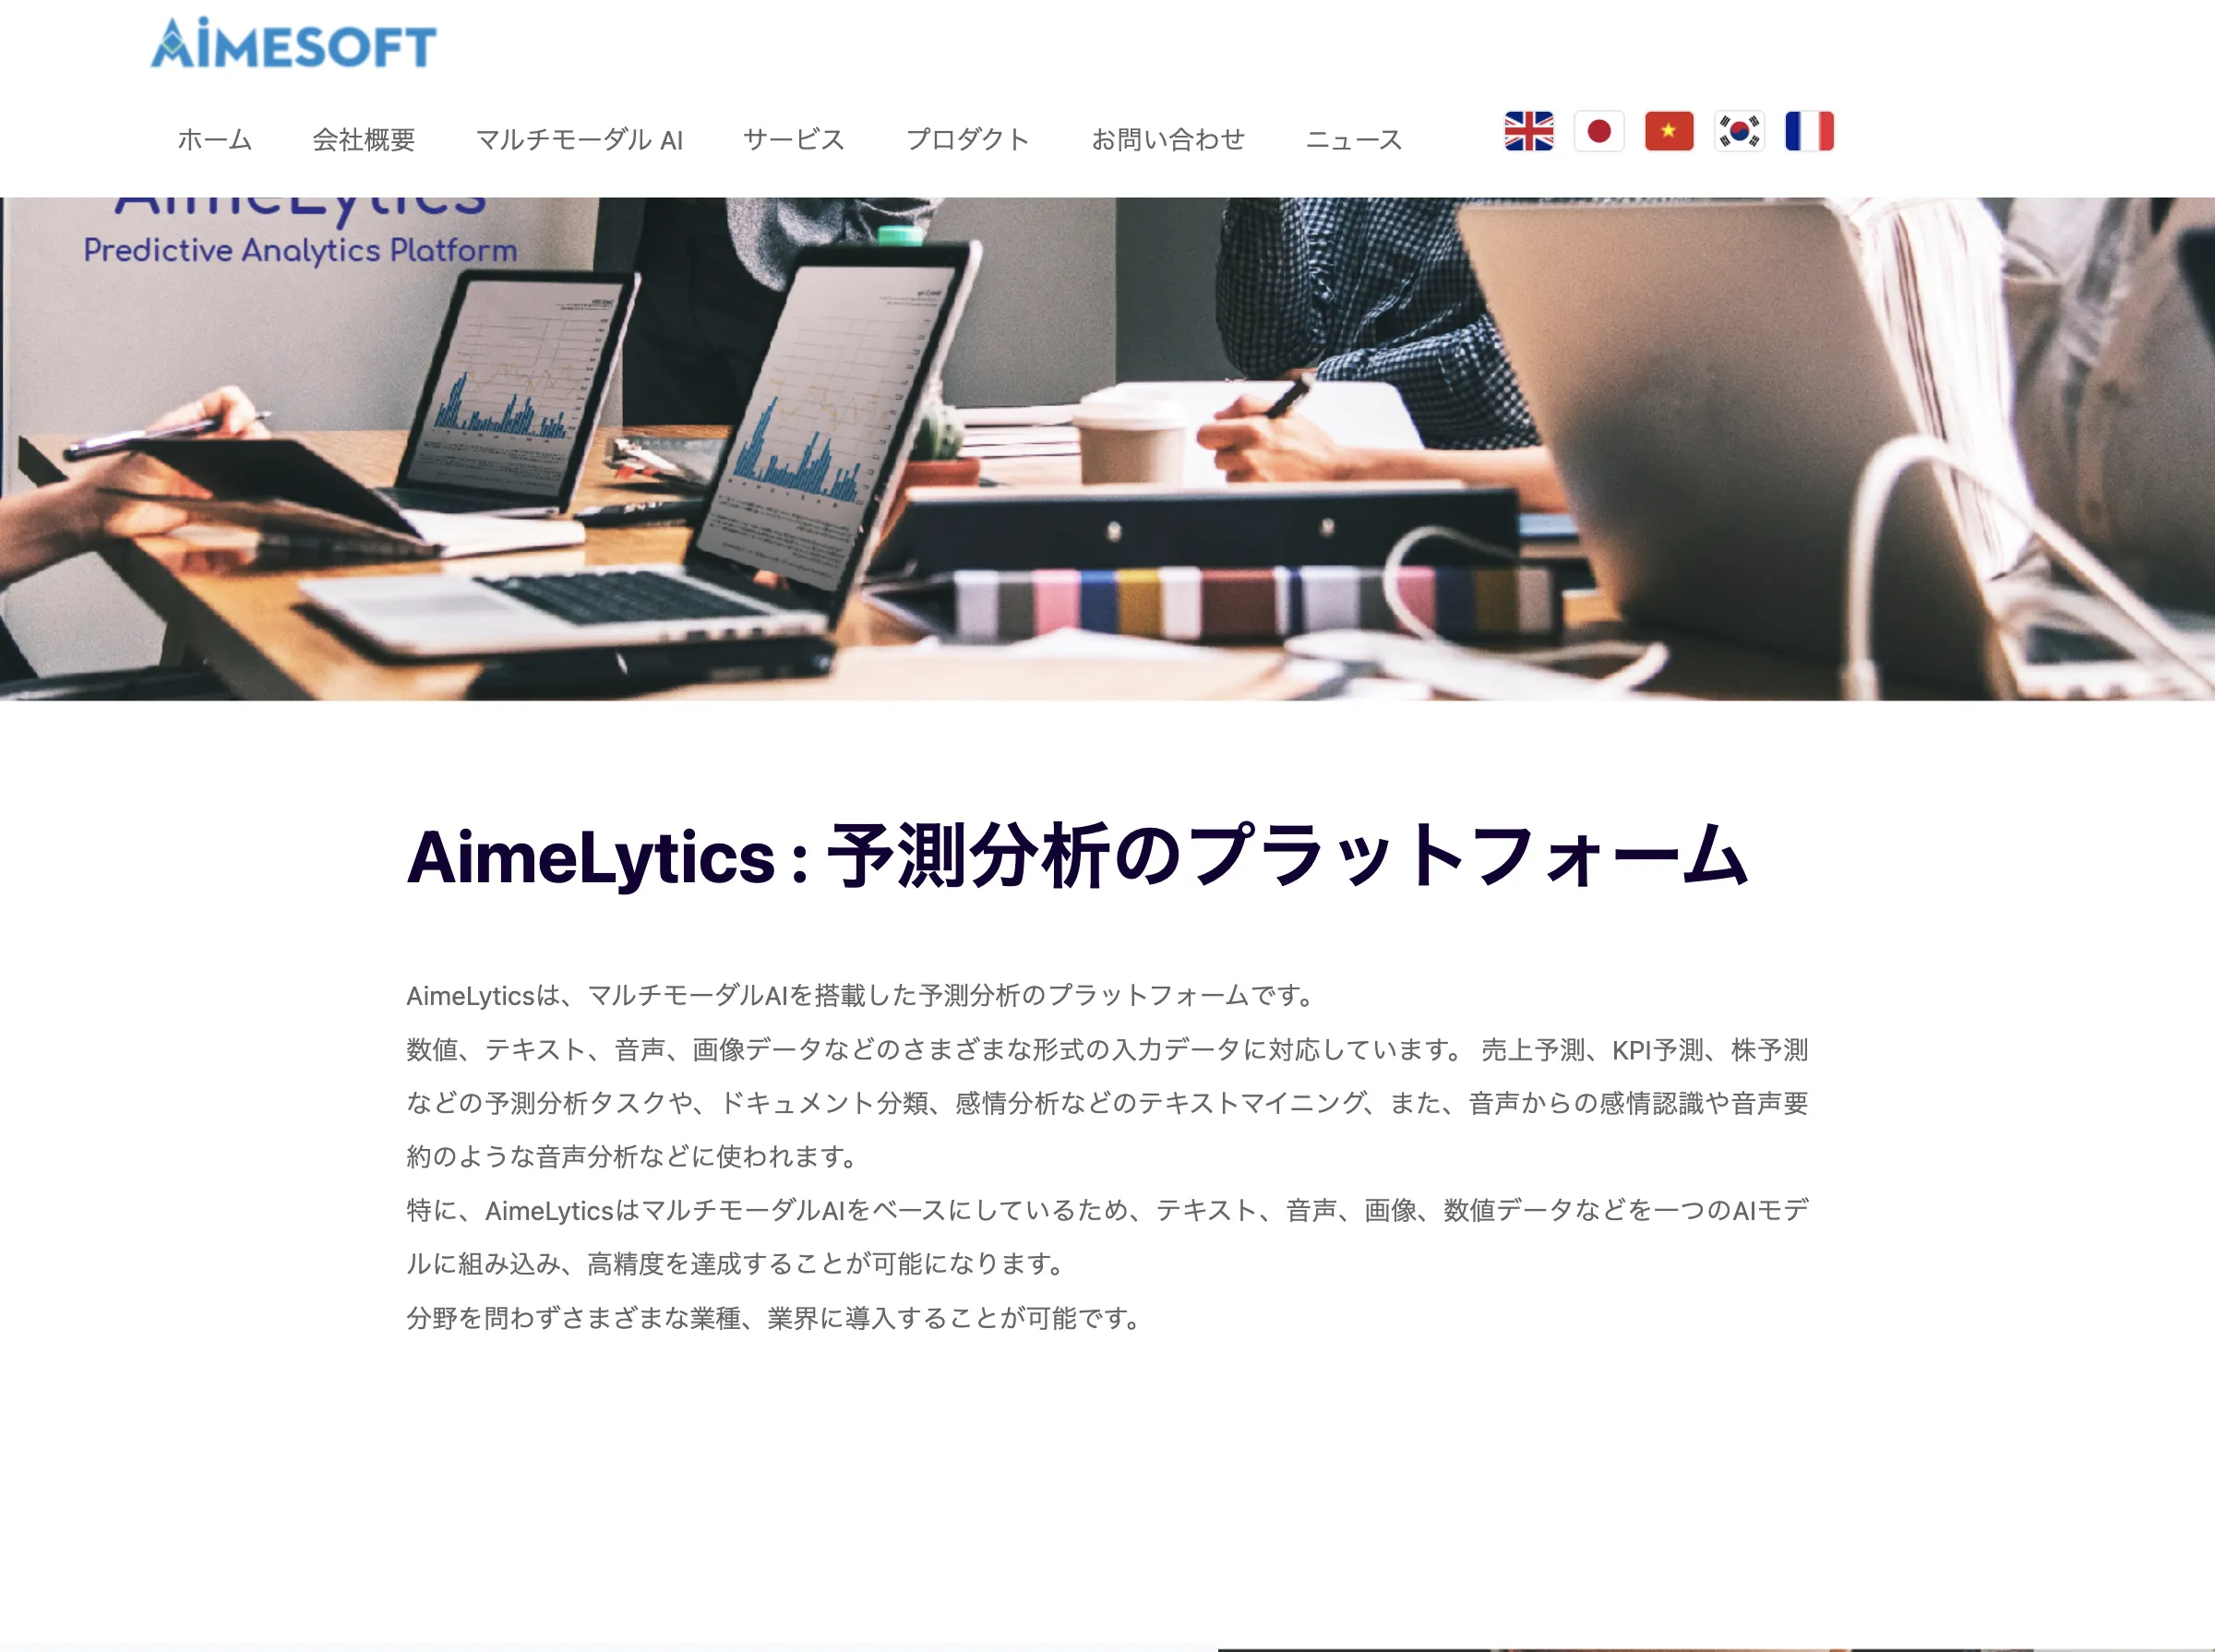 Aimelytics(株式会社アイメソフト・ジャパン)